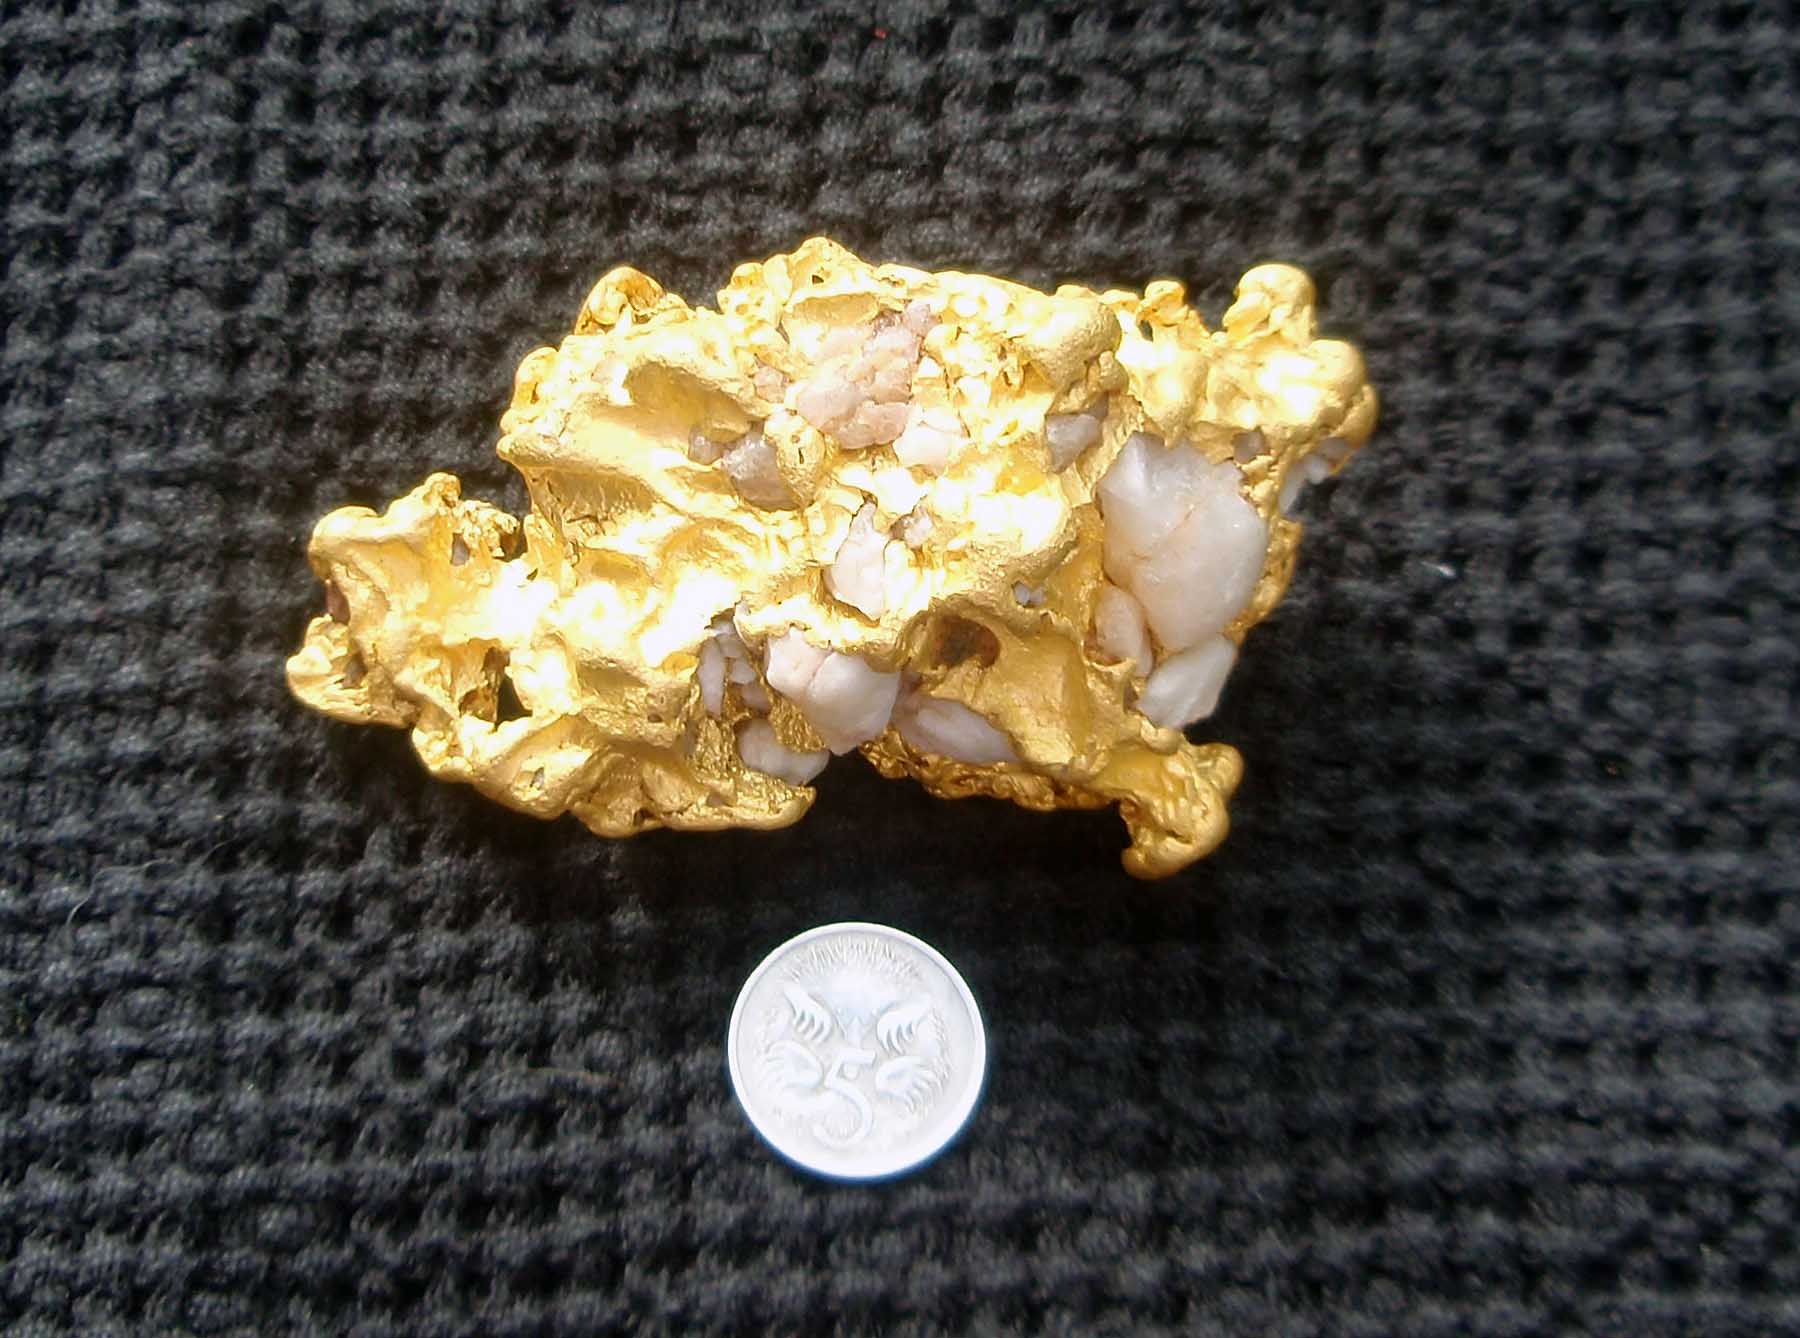 Kooneneberry gold in quartz vein.